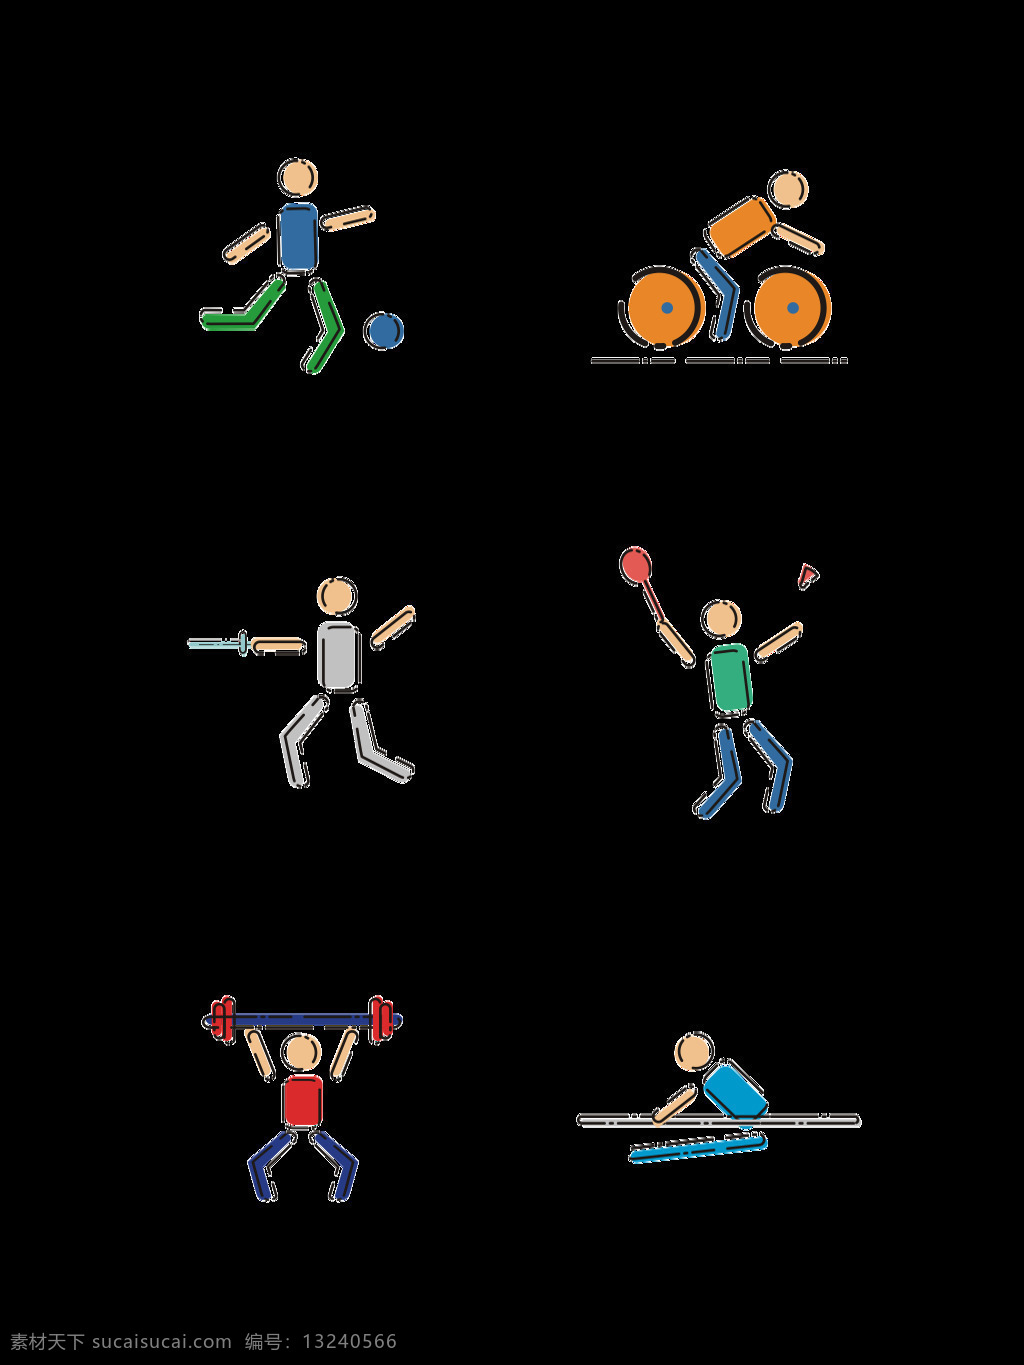 体育运动 小人 图标 卡通 矢量图 运动 足球 自行车 体育 击剑 羽毛球 举重 体操 锻炼